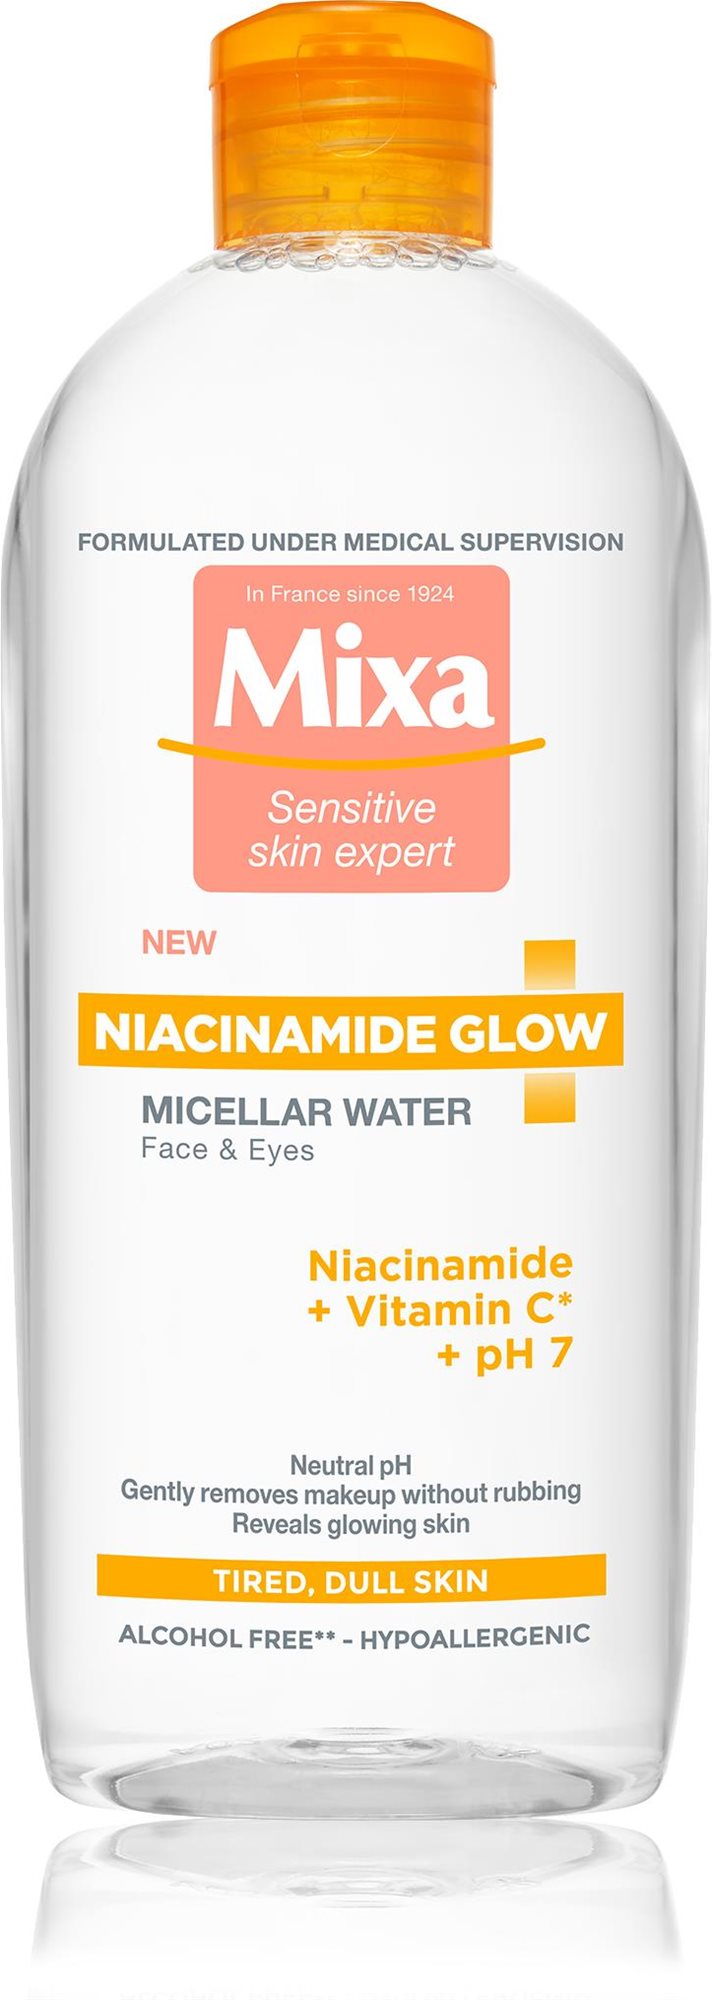 Micellás víz MIXA Niacinamide Glow Micellás víz 400 ml